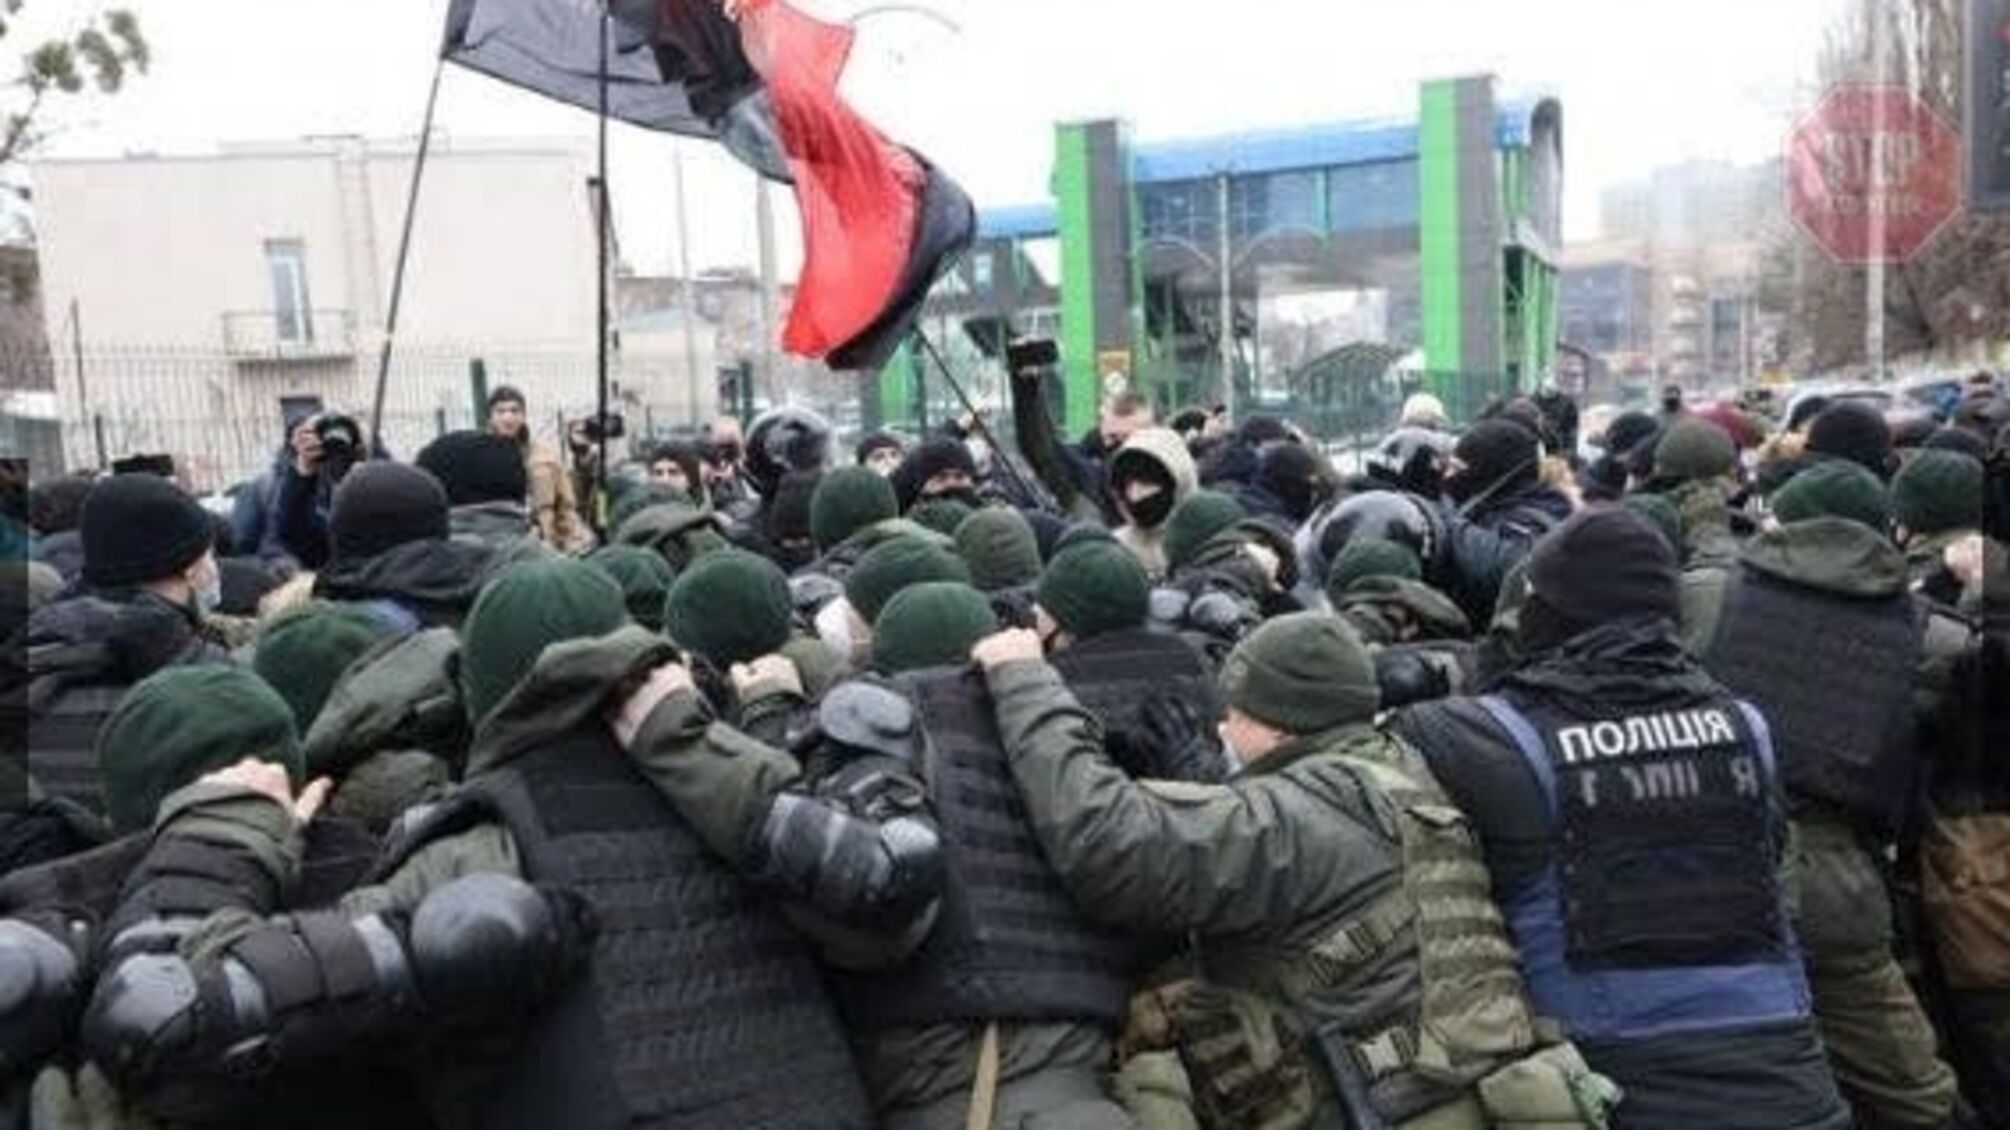 В Киеве произошла потасовка под телеканалом ''НАШ'' между активистами и полицией, есть задержанные